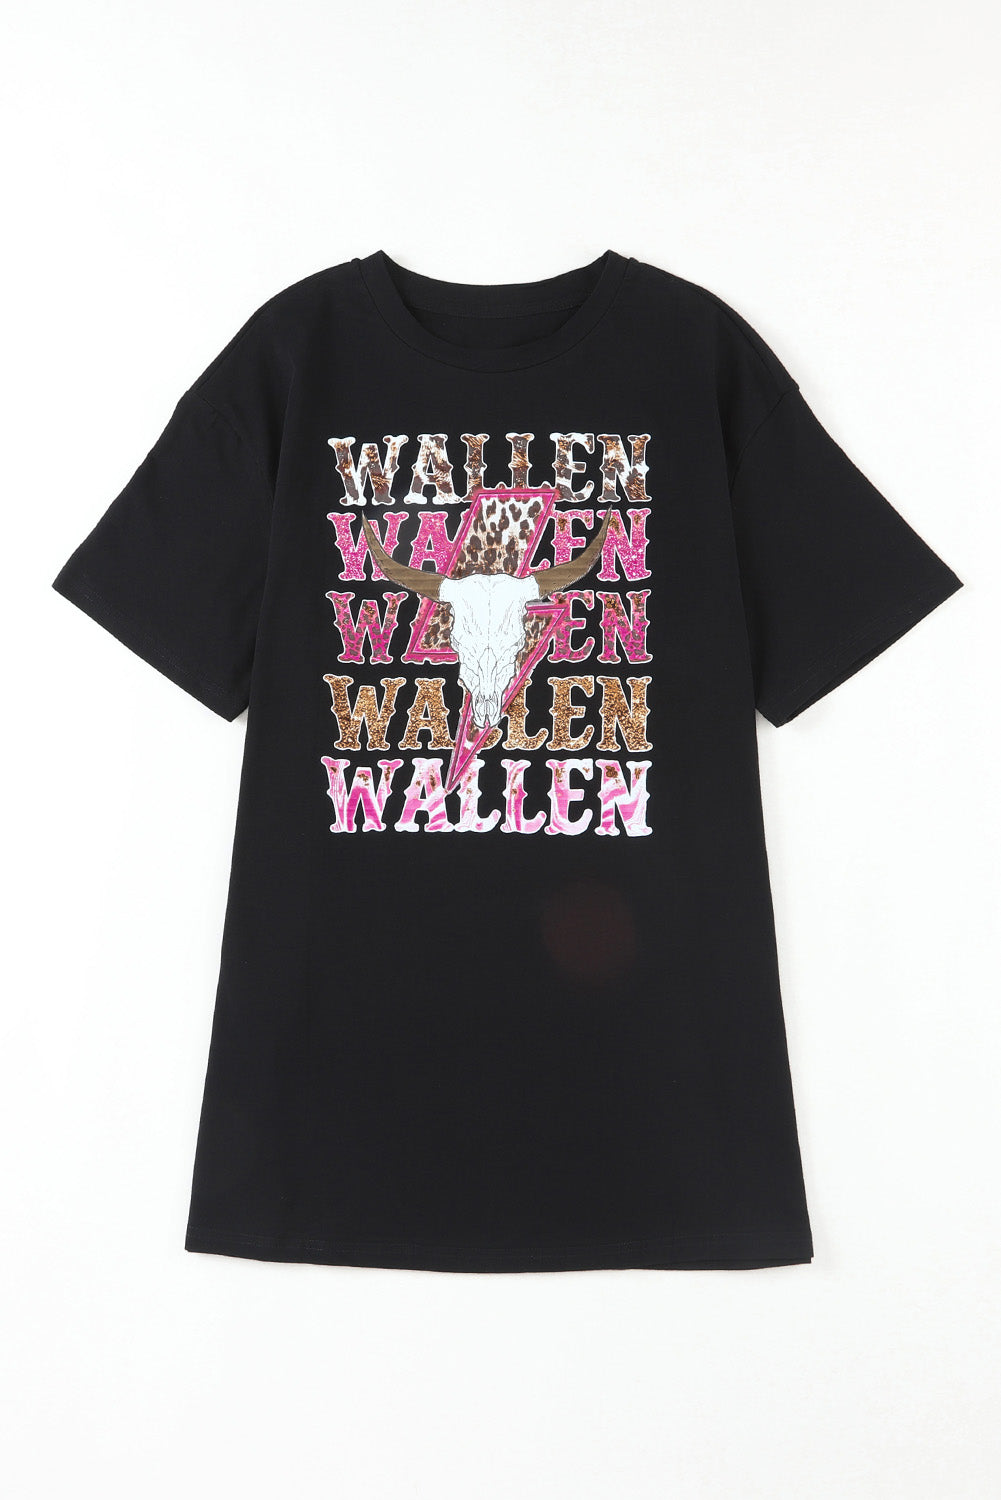 T-shirt surdimensionné noir WALLEN Cowskull Graphic